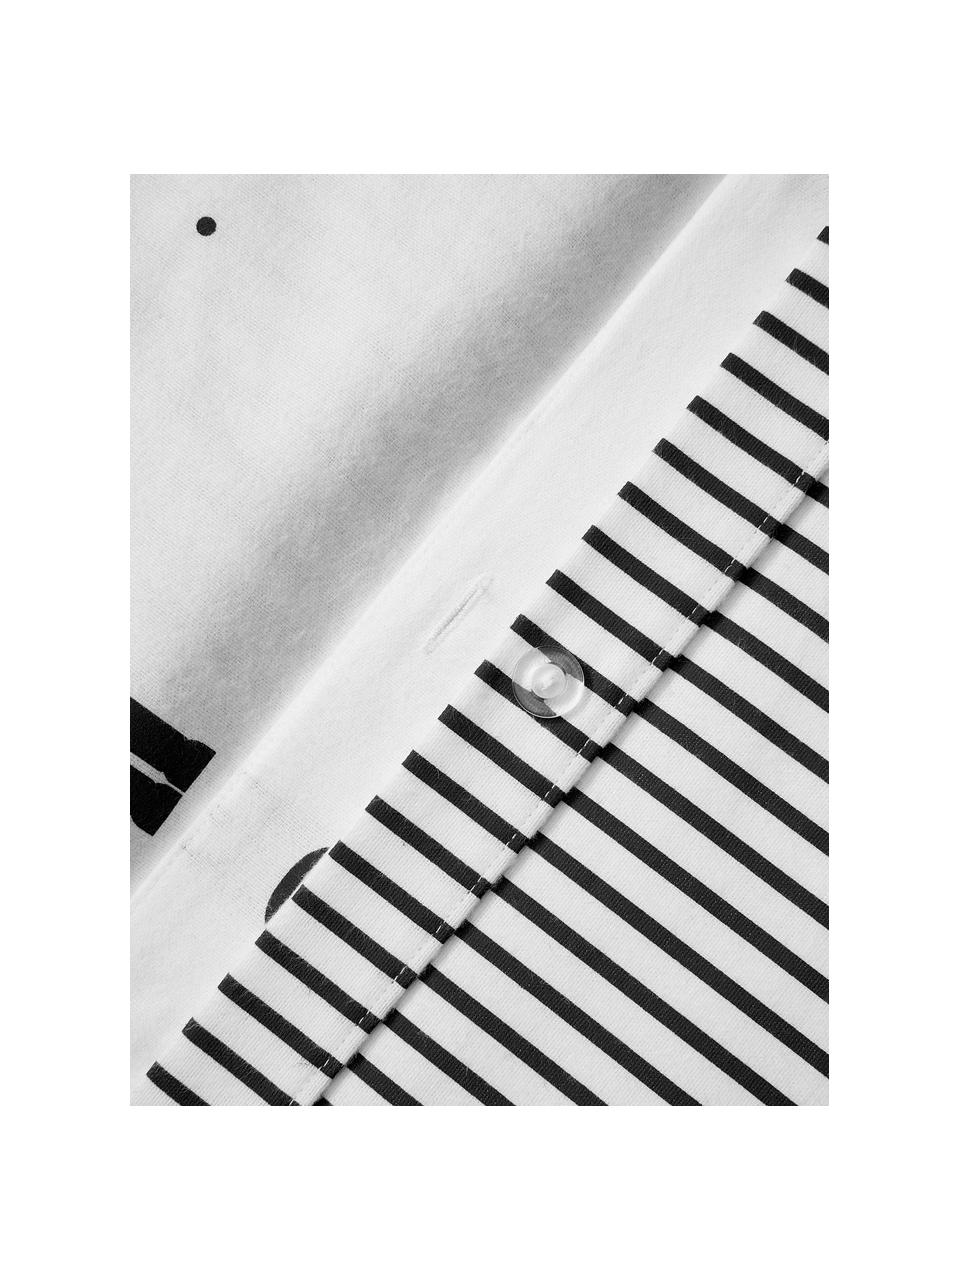 Omkeerbare flanellen dekbedovertrek Noan met notenkrakermotief, Weeftechniek: flanel Flanel is een knuf, Zwart, wit, B 200 x L 200 cm